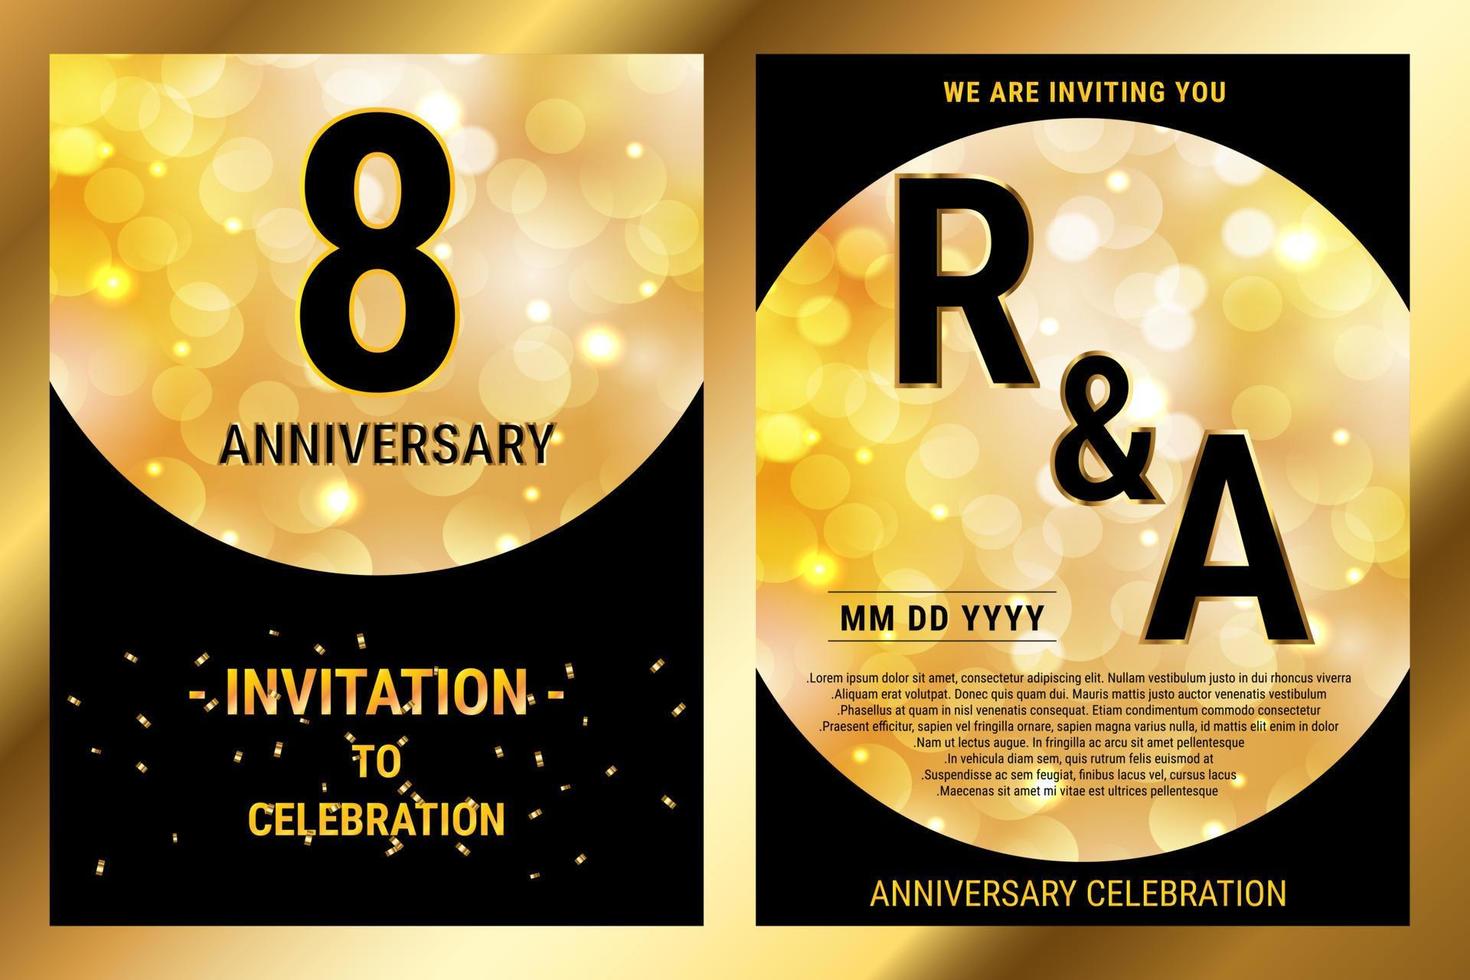 8:e år födelsedag vektor svart papper lyx inbjudan dubbel- kort. bröllop årsdag firande broschyr. mall av inbjudnings- för skriva ut hitam och guld bakgrund